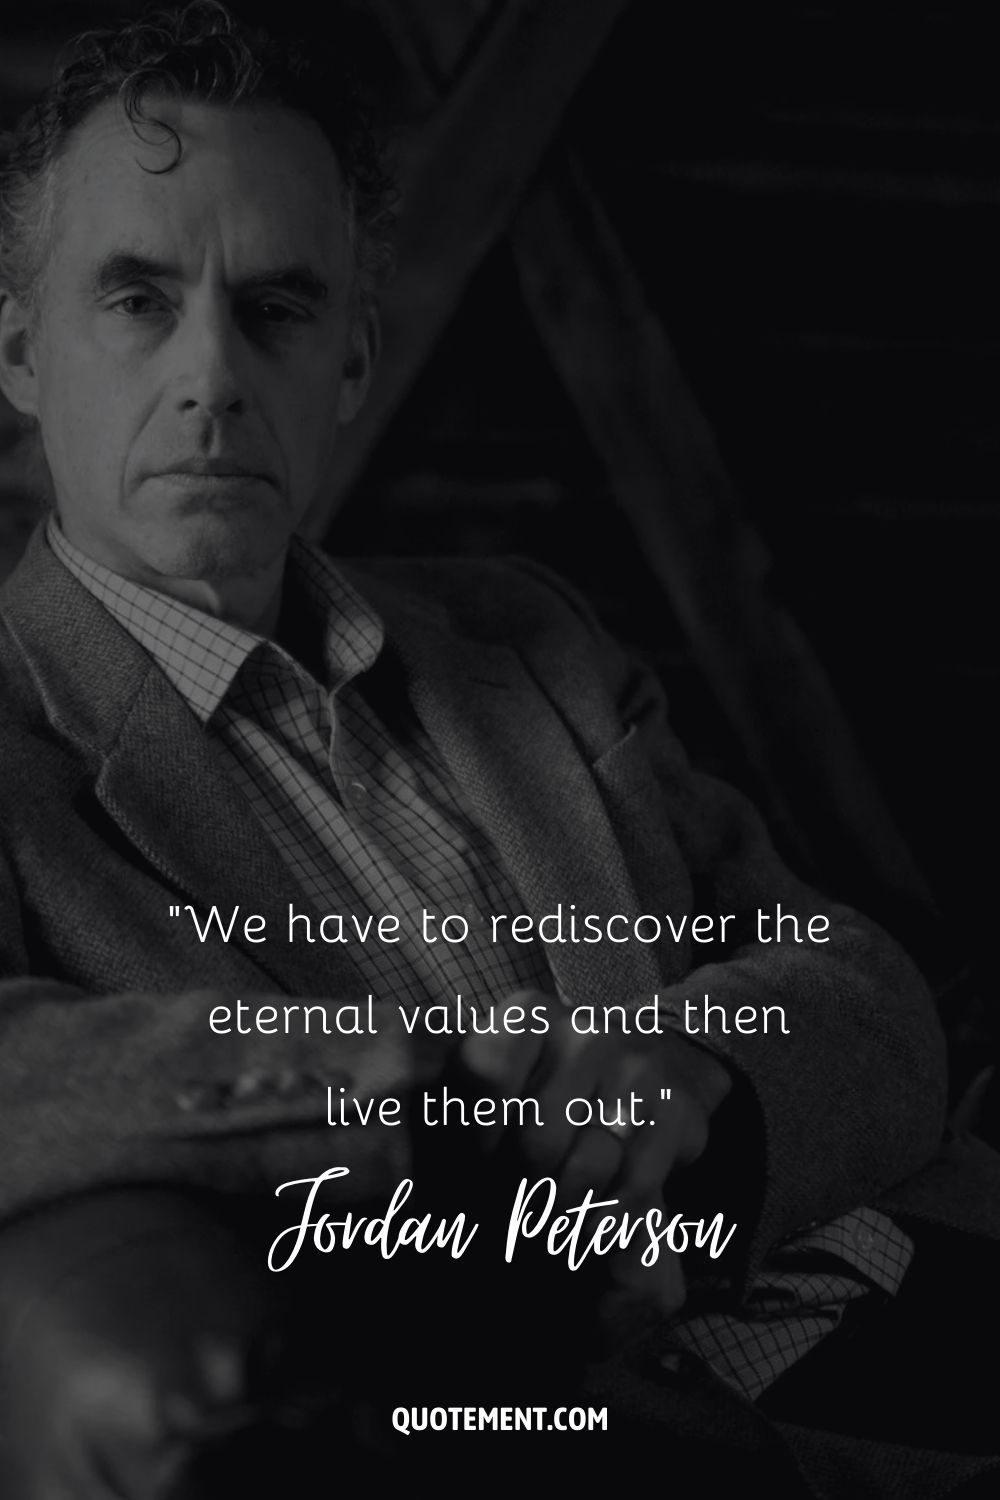 Cita de Jordan Peterson sobre redescubrir los valores.